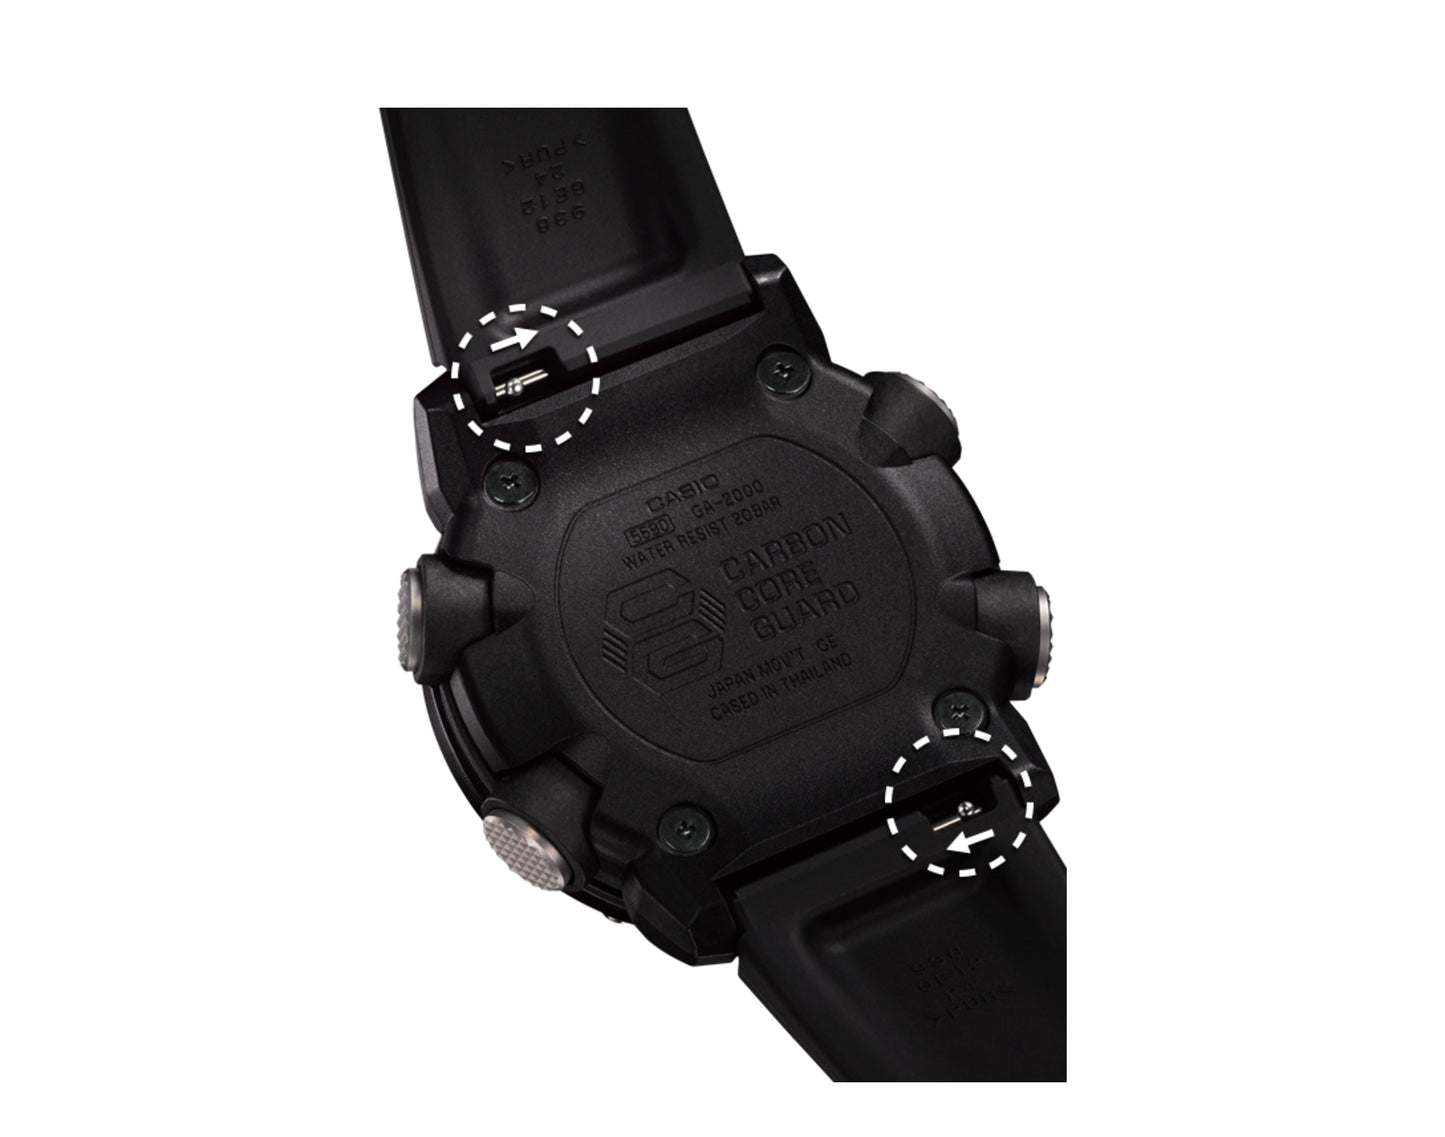 Casio G-Shock GA2000 Front Button Analog-Digital Navy Blue/Black Men's Watch GA2000-2A